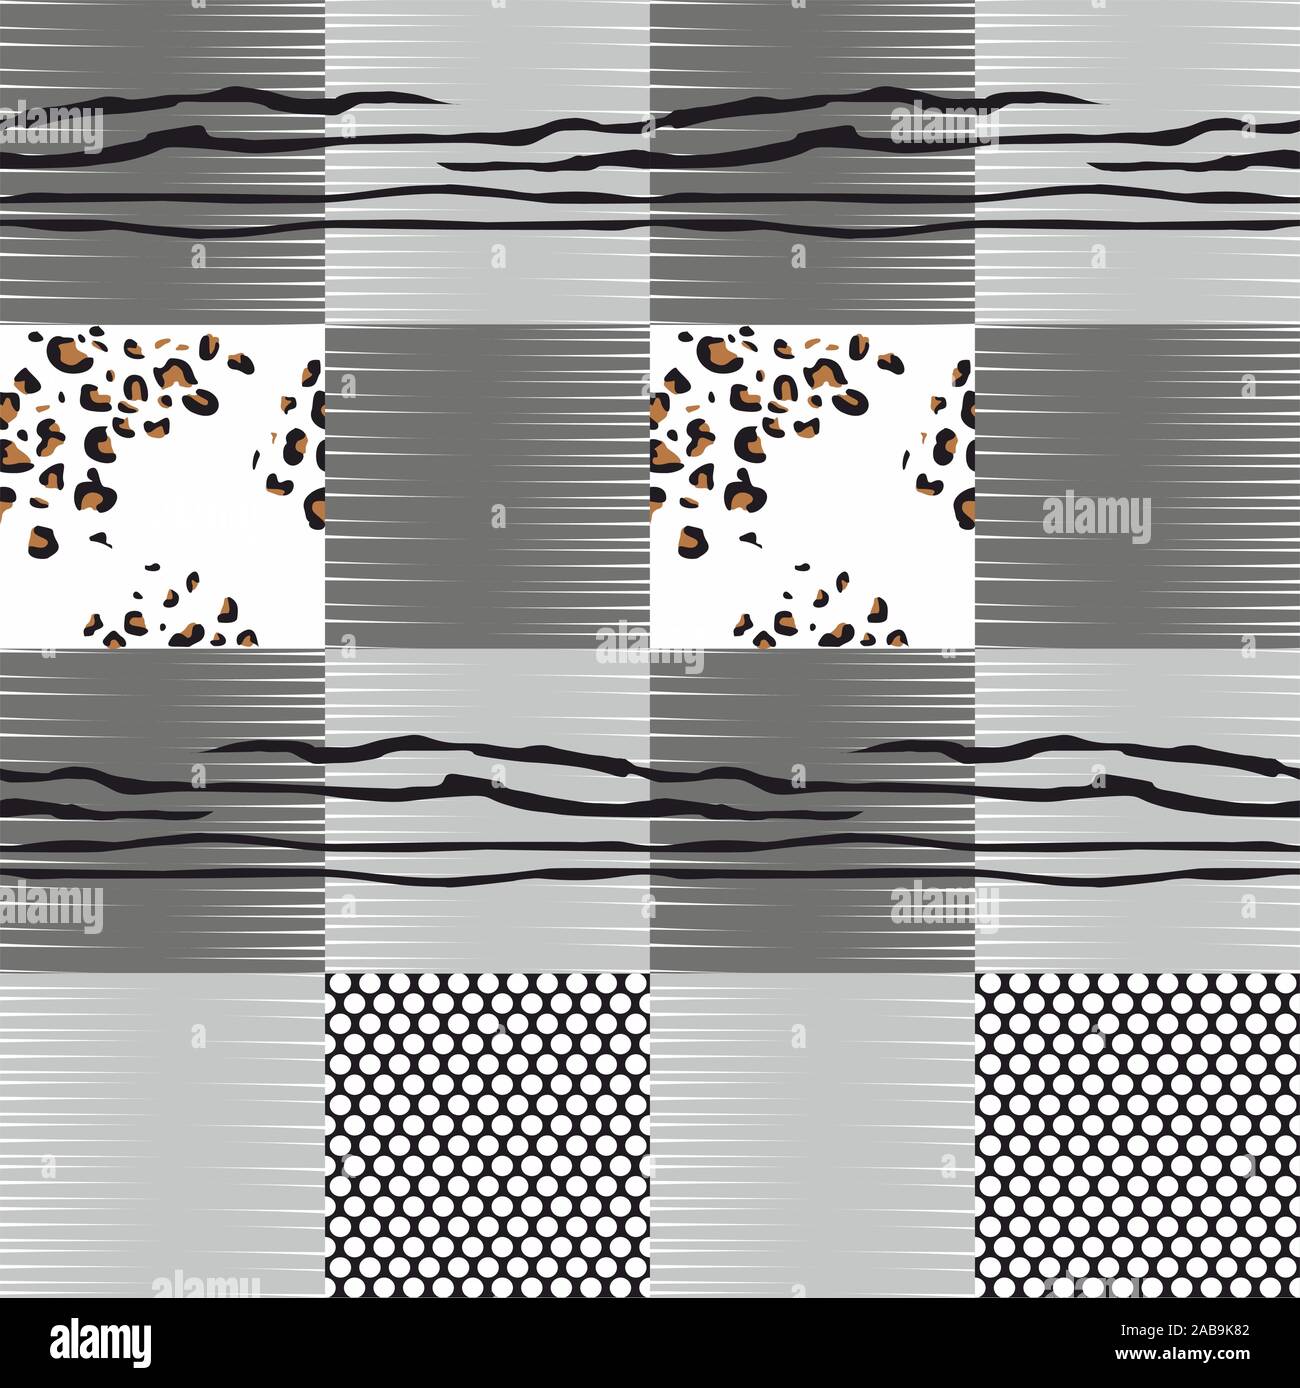 Schwarz und Weiß moderne patchwork Collage tierische Haut mit geometrischen Muster, Leopard, Zebra gemischt, Polka Dot. - Vektor Stock Vektor